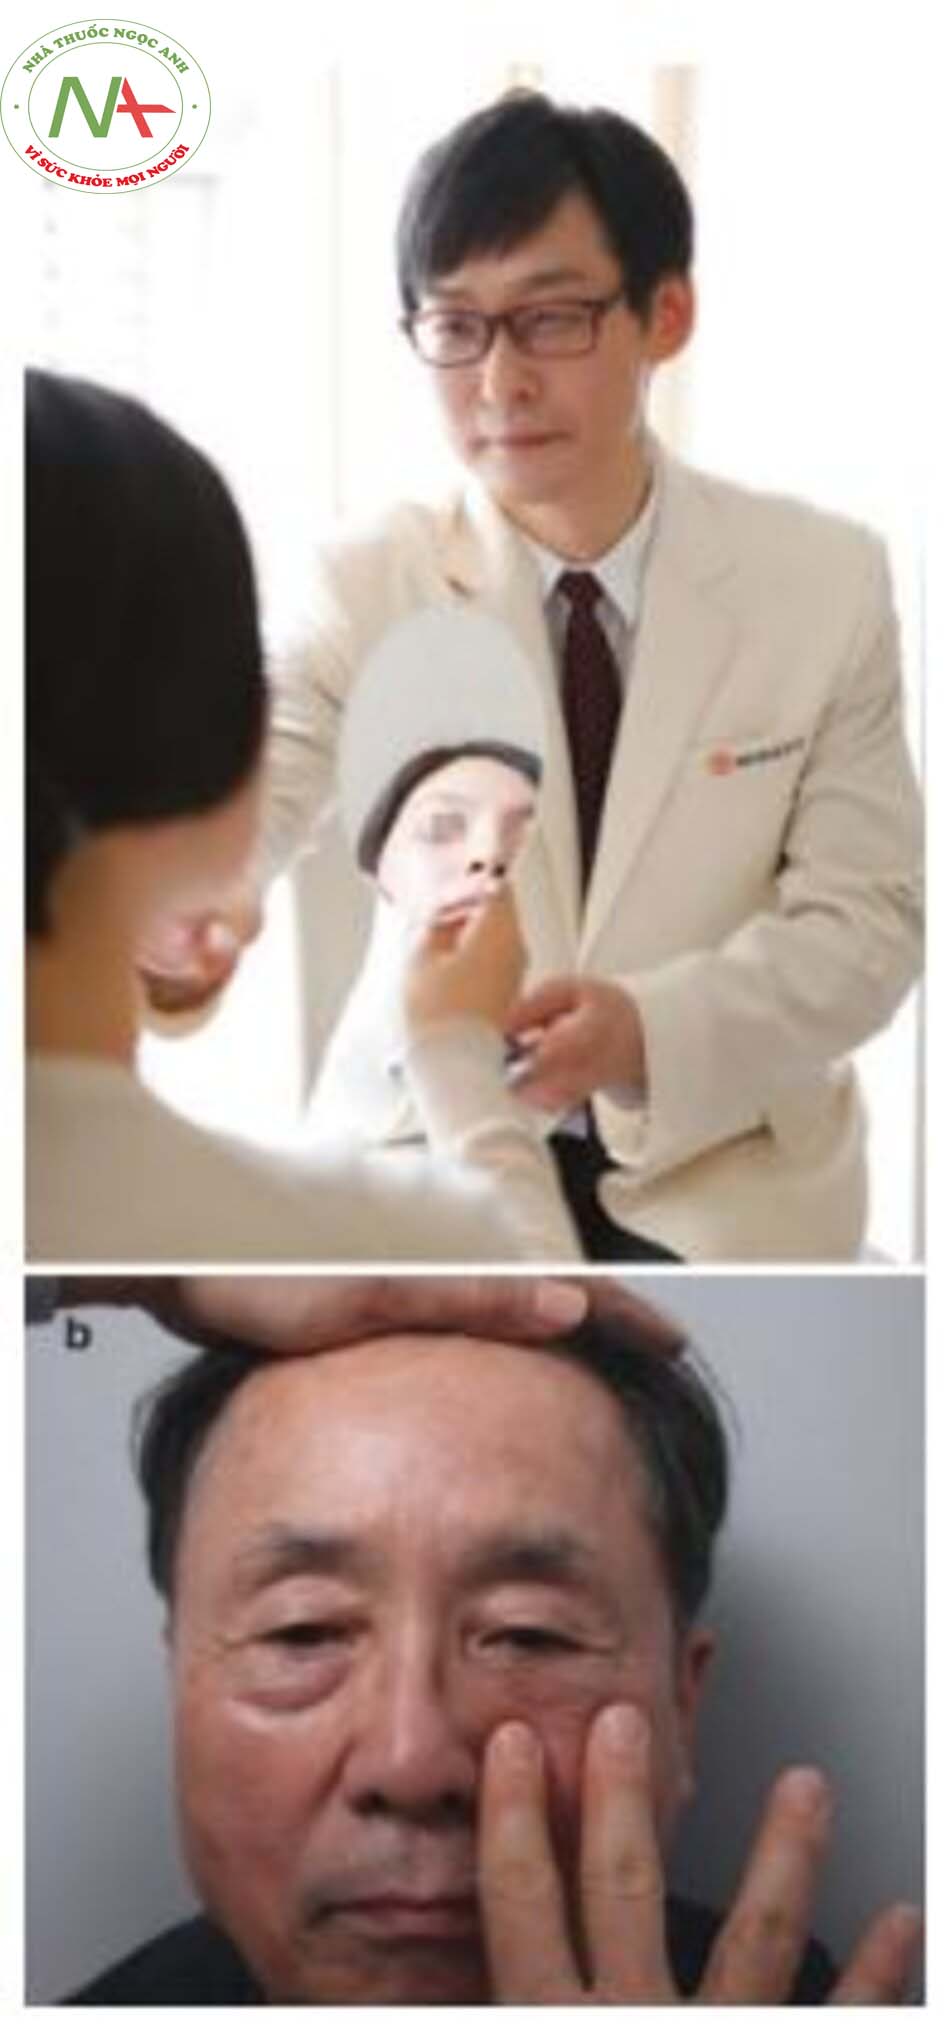 Hình 1.1 (a) Tư vấn qua gương, (b) Bệnh nhân 72 tuổi với bọng mắt lồi và rãnh lệ được cho thấy kết quả mô phỏng sau khi tiêm chất làm đầy thông qua "tư vấn qua gương" 